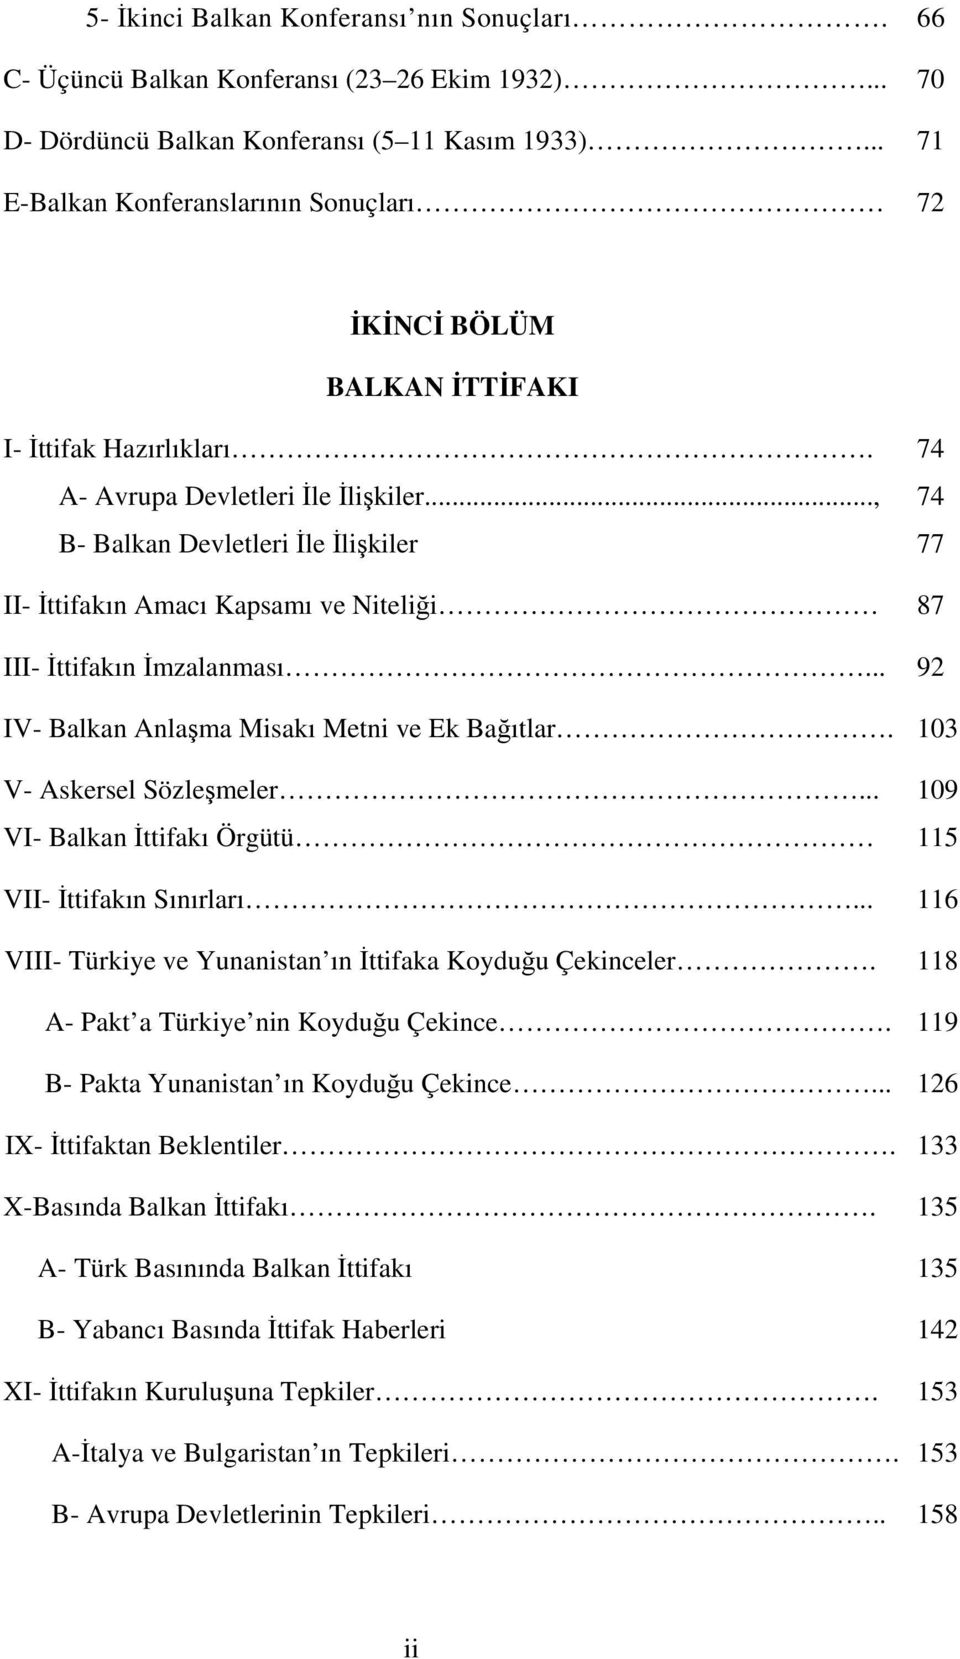 .., 74 B- Balkan Devletleri le likiler 77 II- ttifakın Amacı Kapsamı ve Nitelii 87 III- ttifakın mzalanması... 92 IV- Balkan Anlama Misakı Metni ve Ek Baıtlar. 103 V- Askersel Sözlemeler.